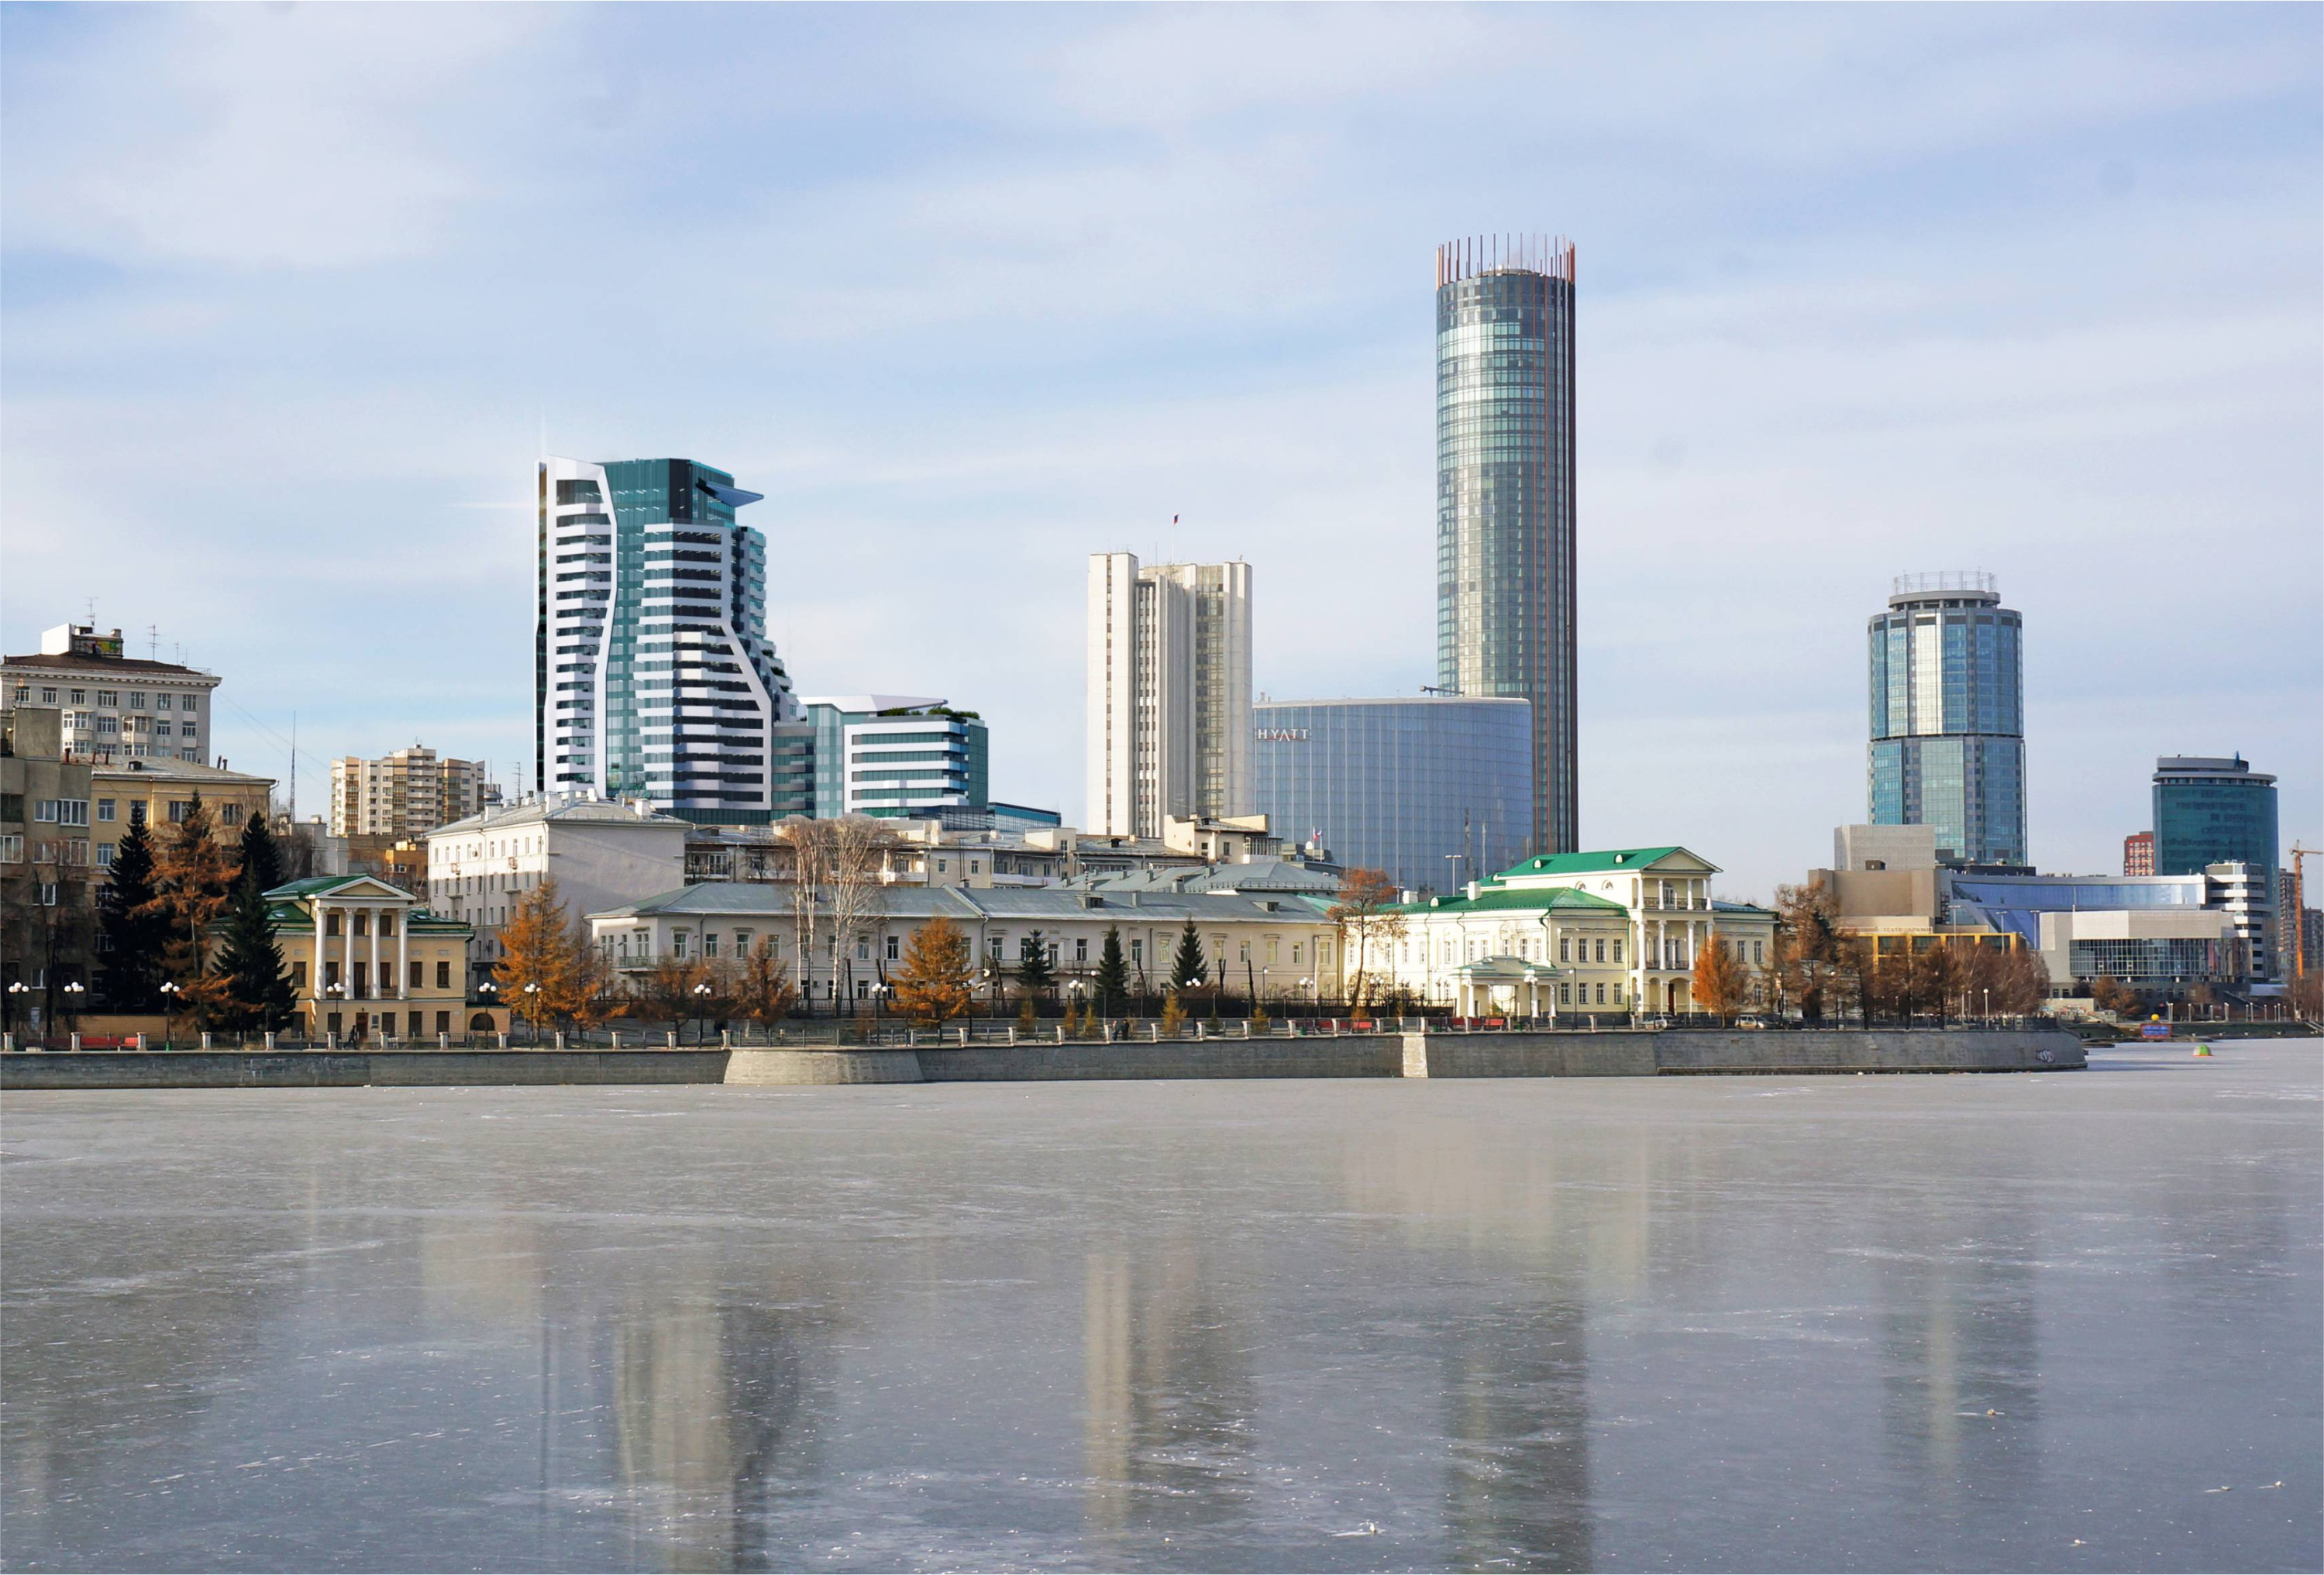 УГМК начала строить огромное здание в самом центре Екатеринбурга. Показываем, как изменится вид